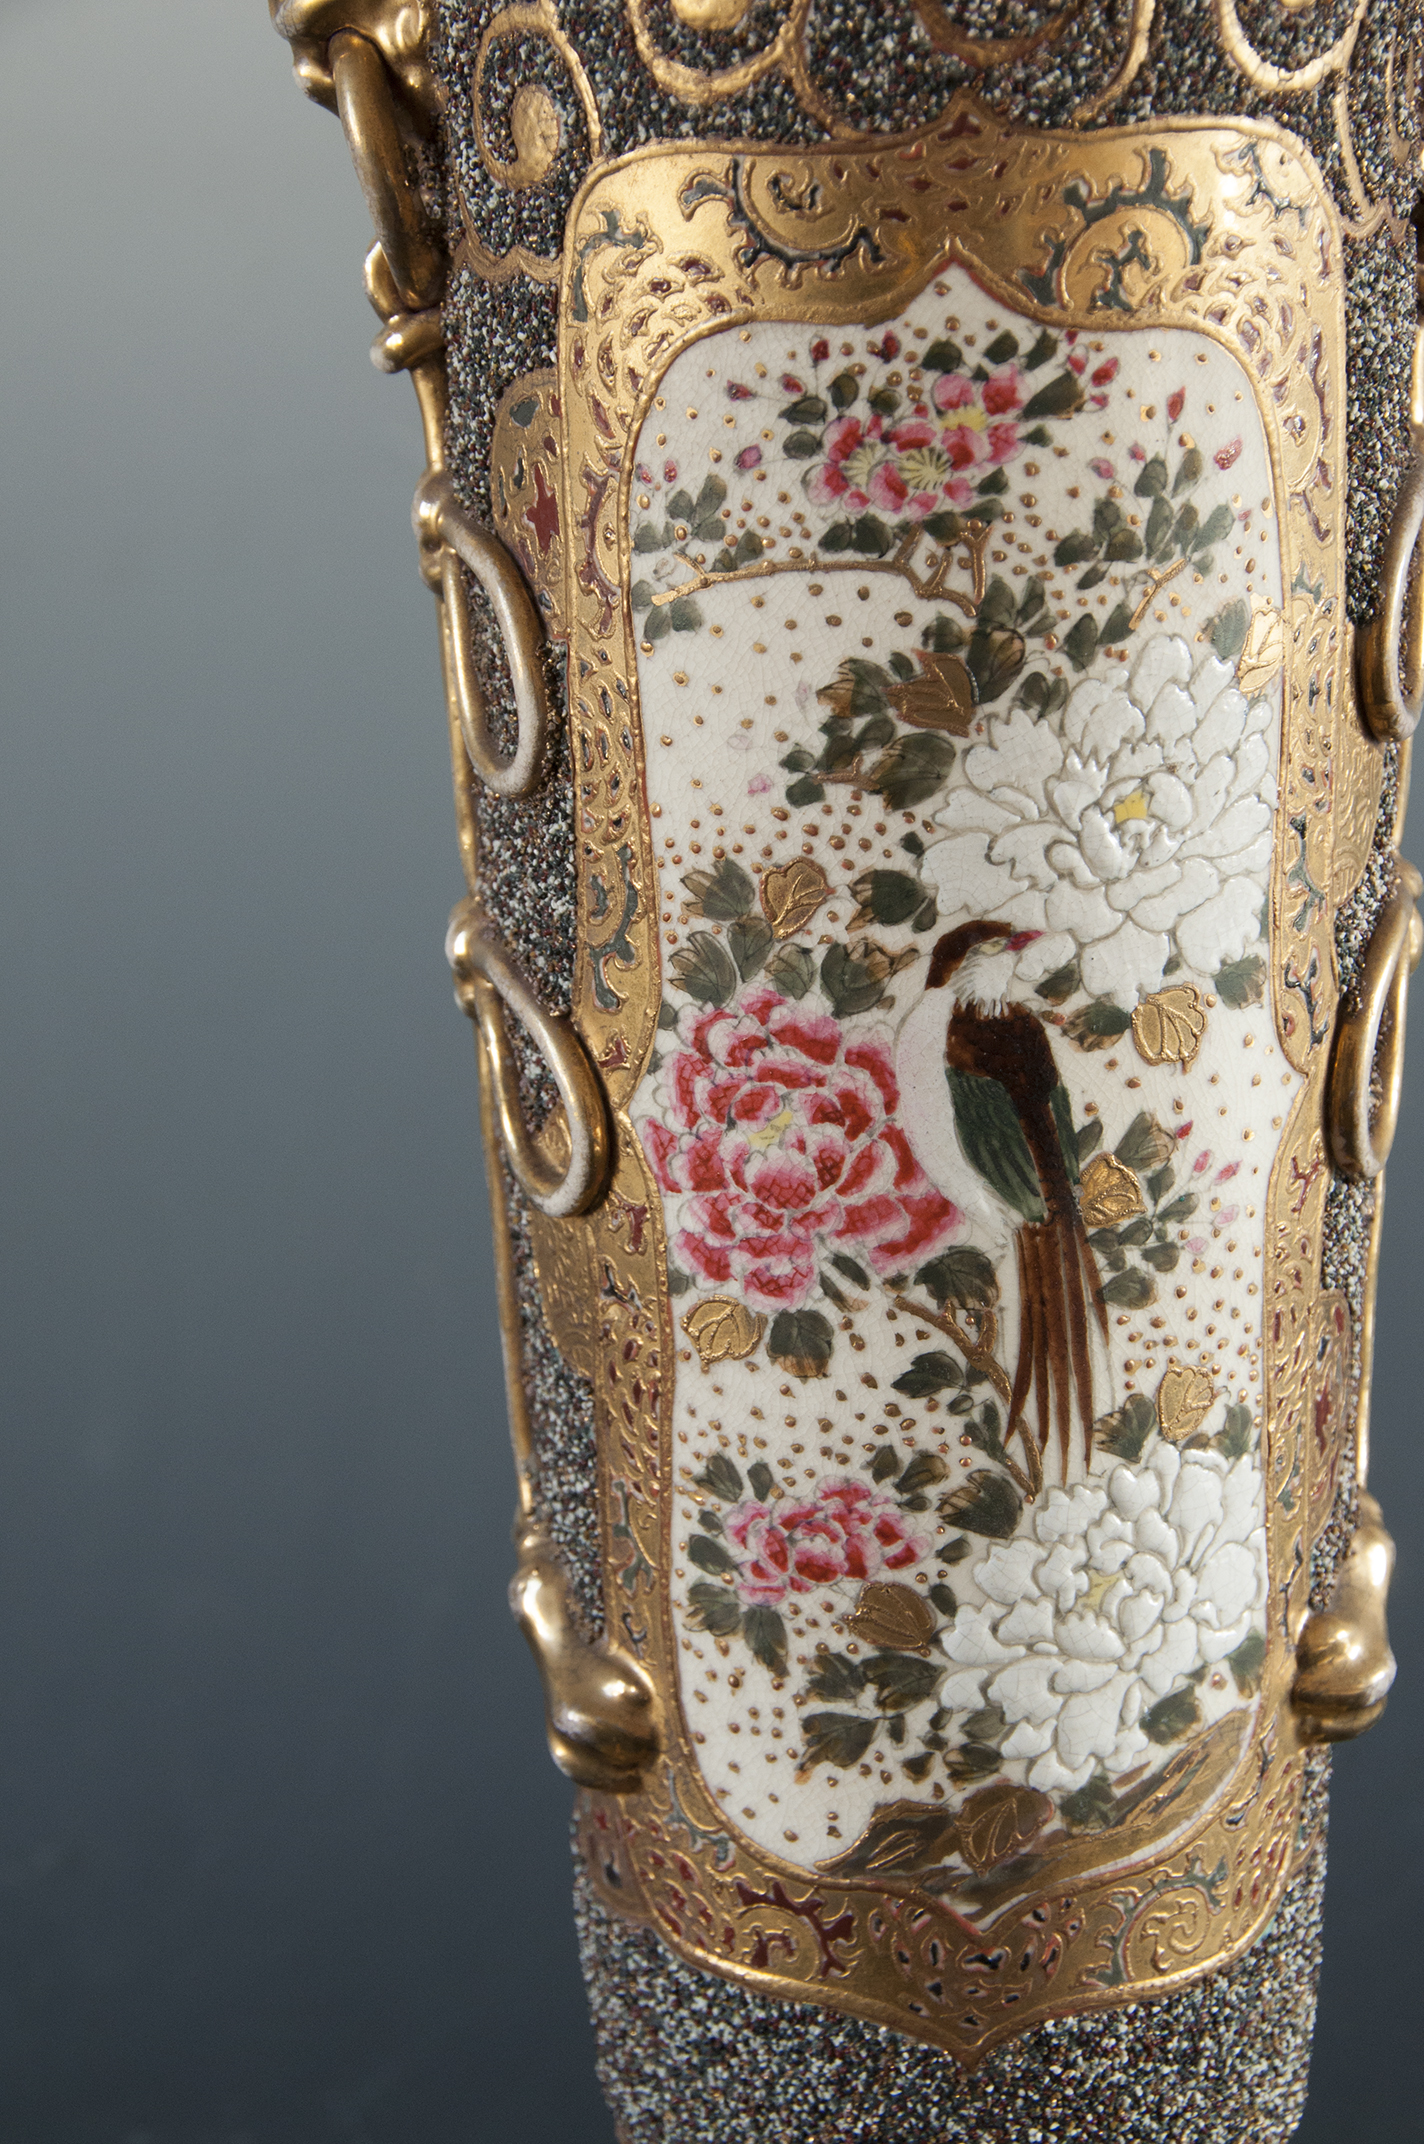 Na ceramicznym korpusie lampy naftowej bogato dekorowana złoceniami przestrzeń, w złotym ornamentem wydzielone pole wpisana dekoracja z kwiatami wiśni, piwonii i sójką.